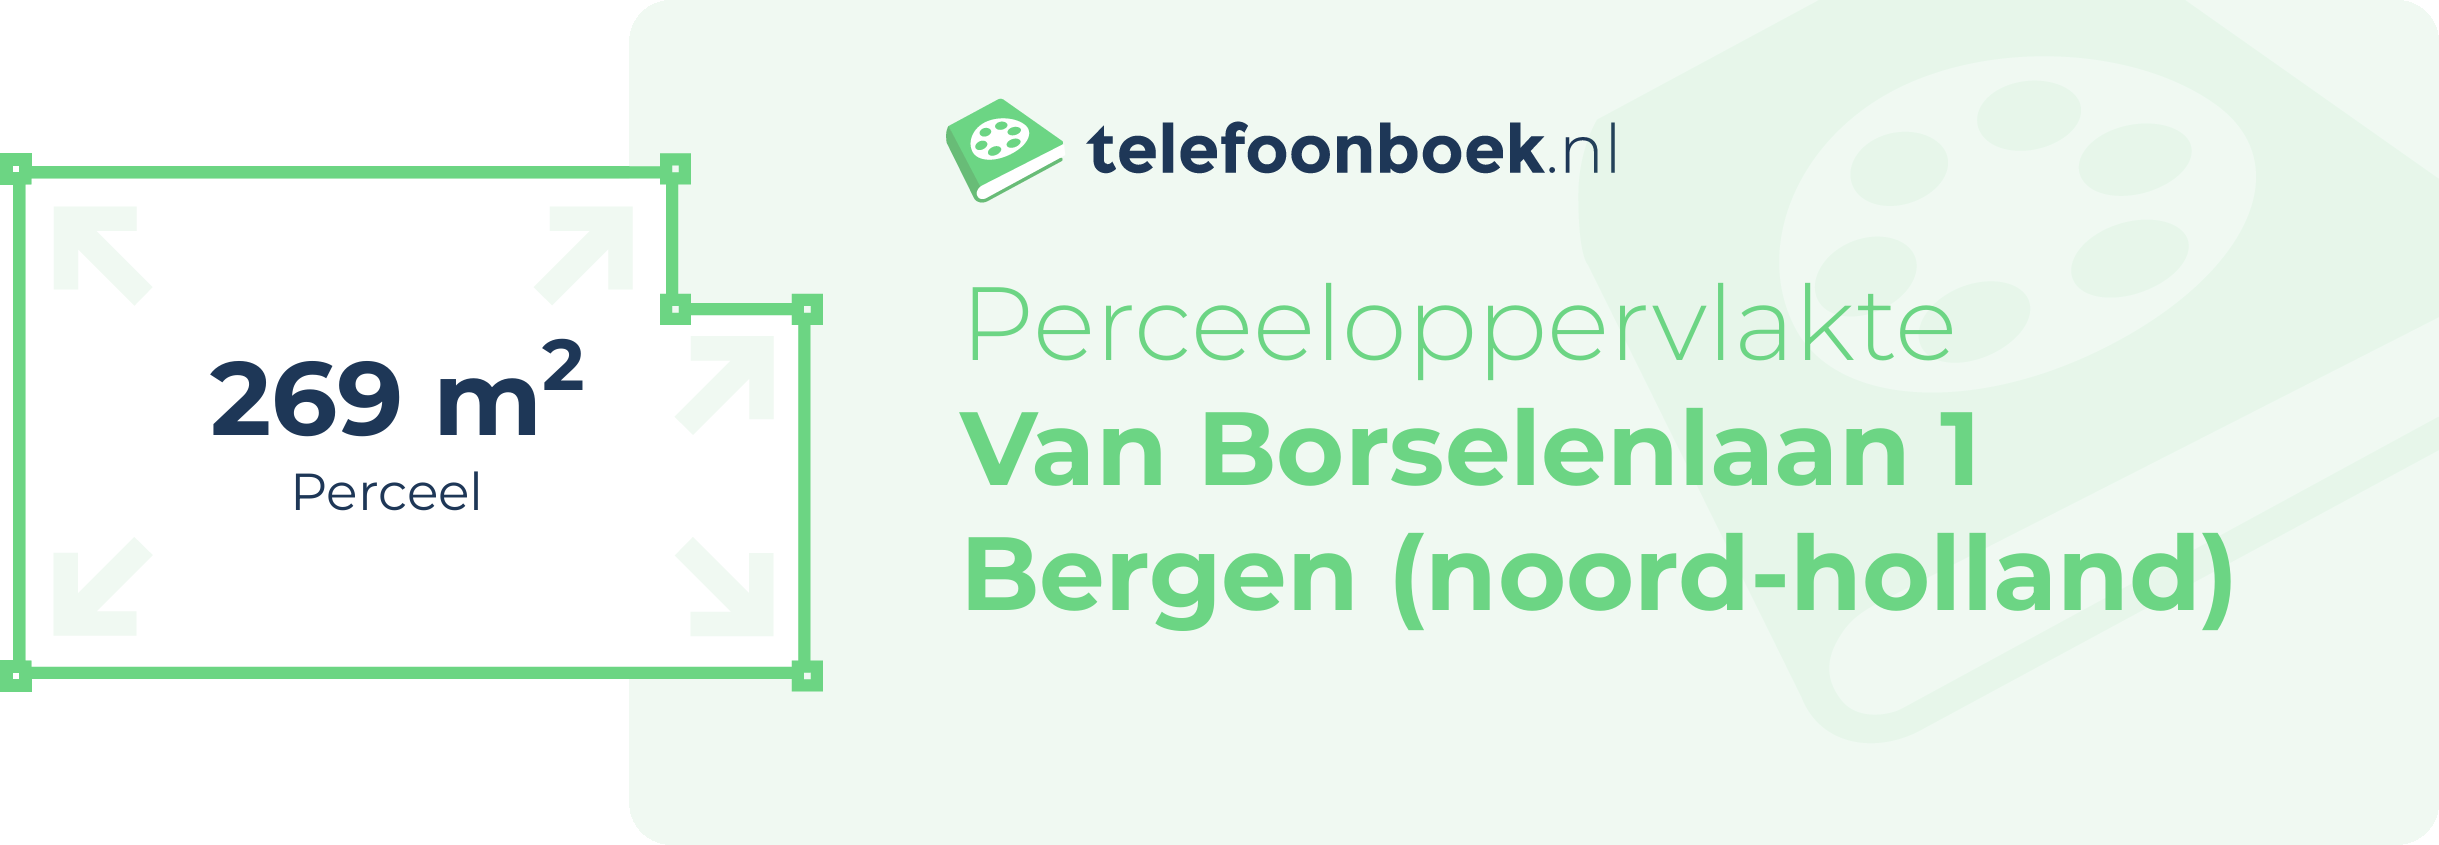 Perceeloppervlakte Van Borselenlaan 1 Bergen (Noord-Holland)